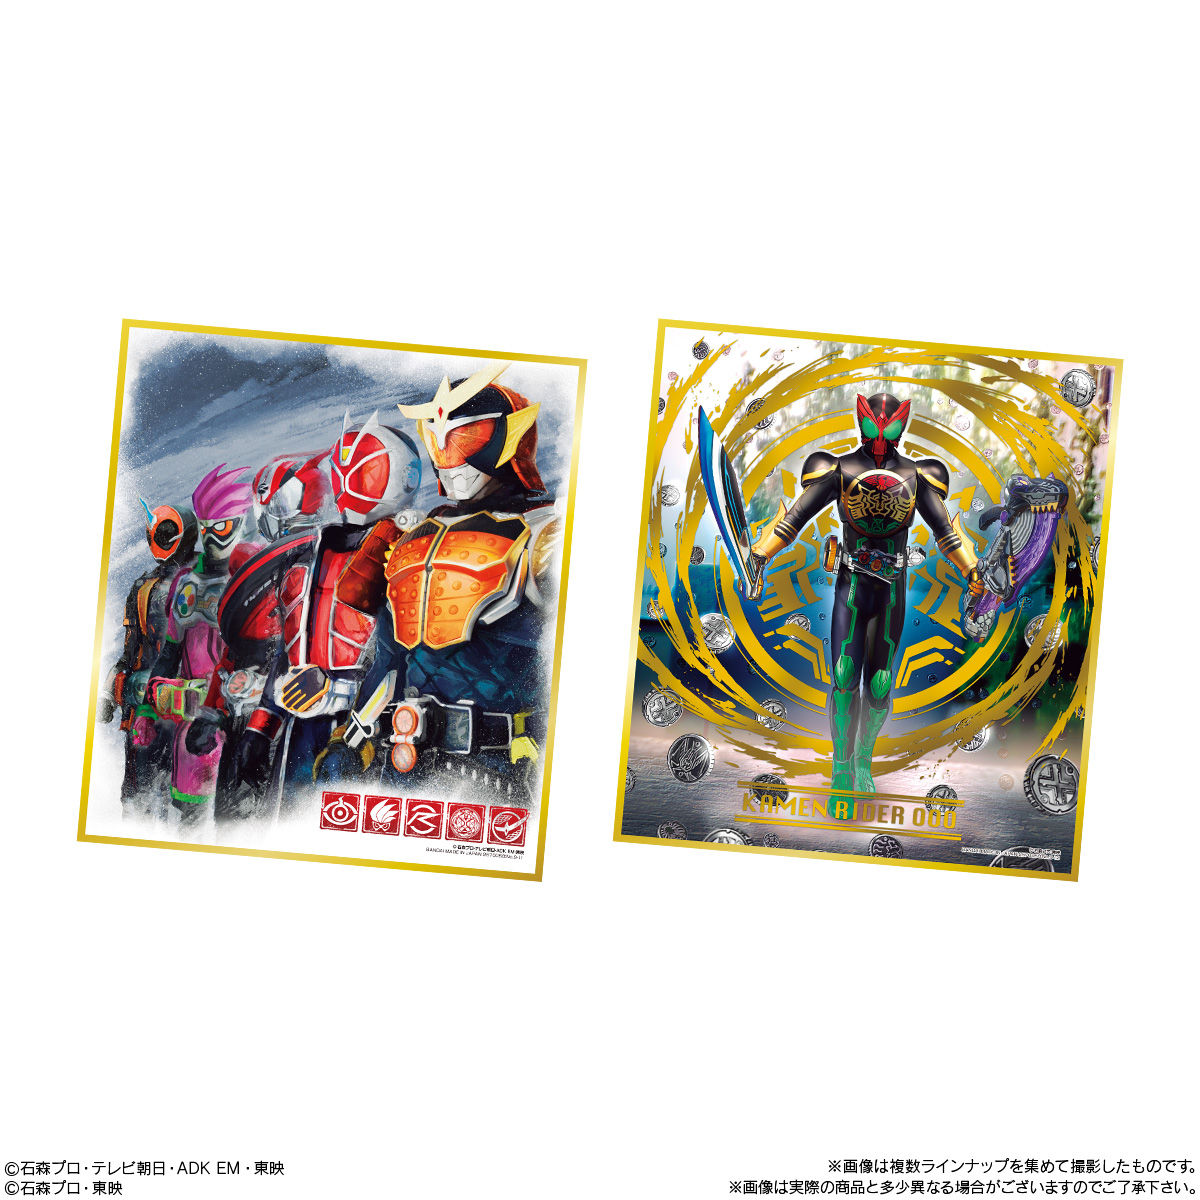 【食玩】仮面ライダー『仮面ライダー色紙ART9』10個入りBOX-007